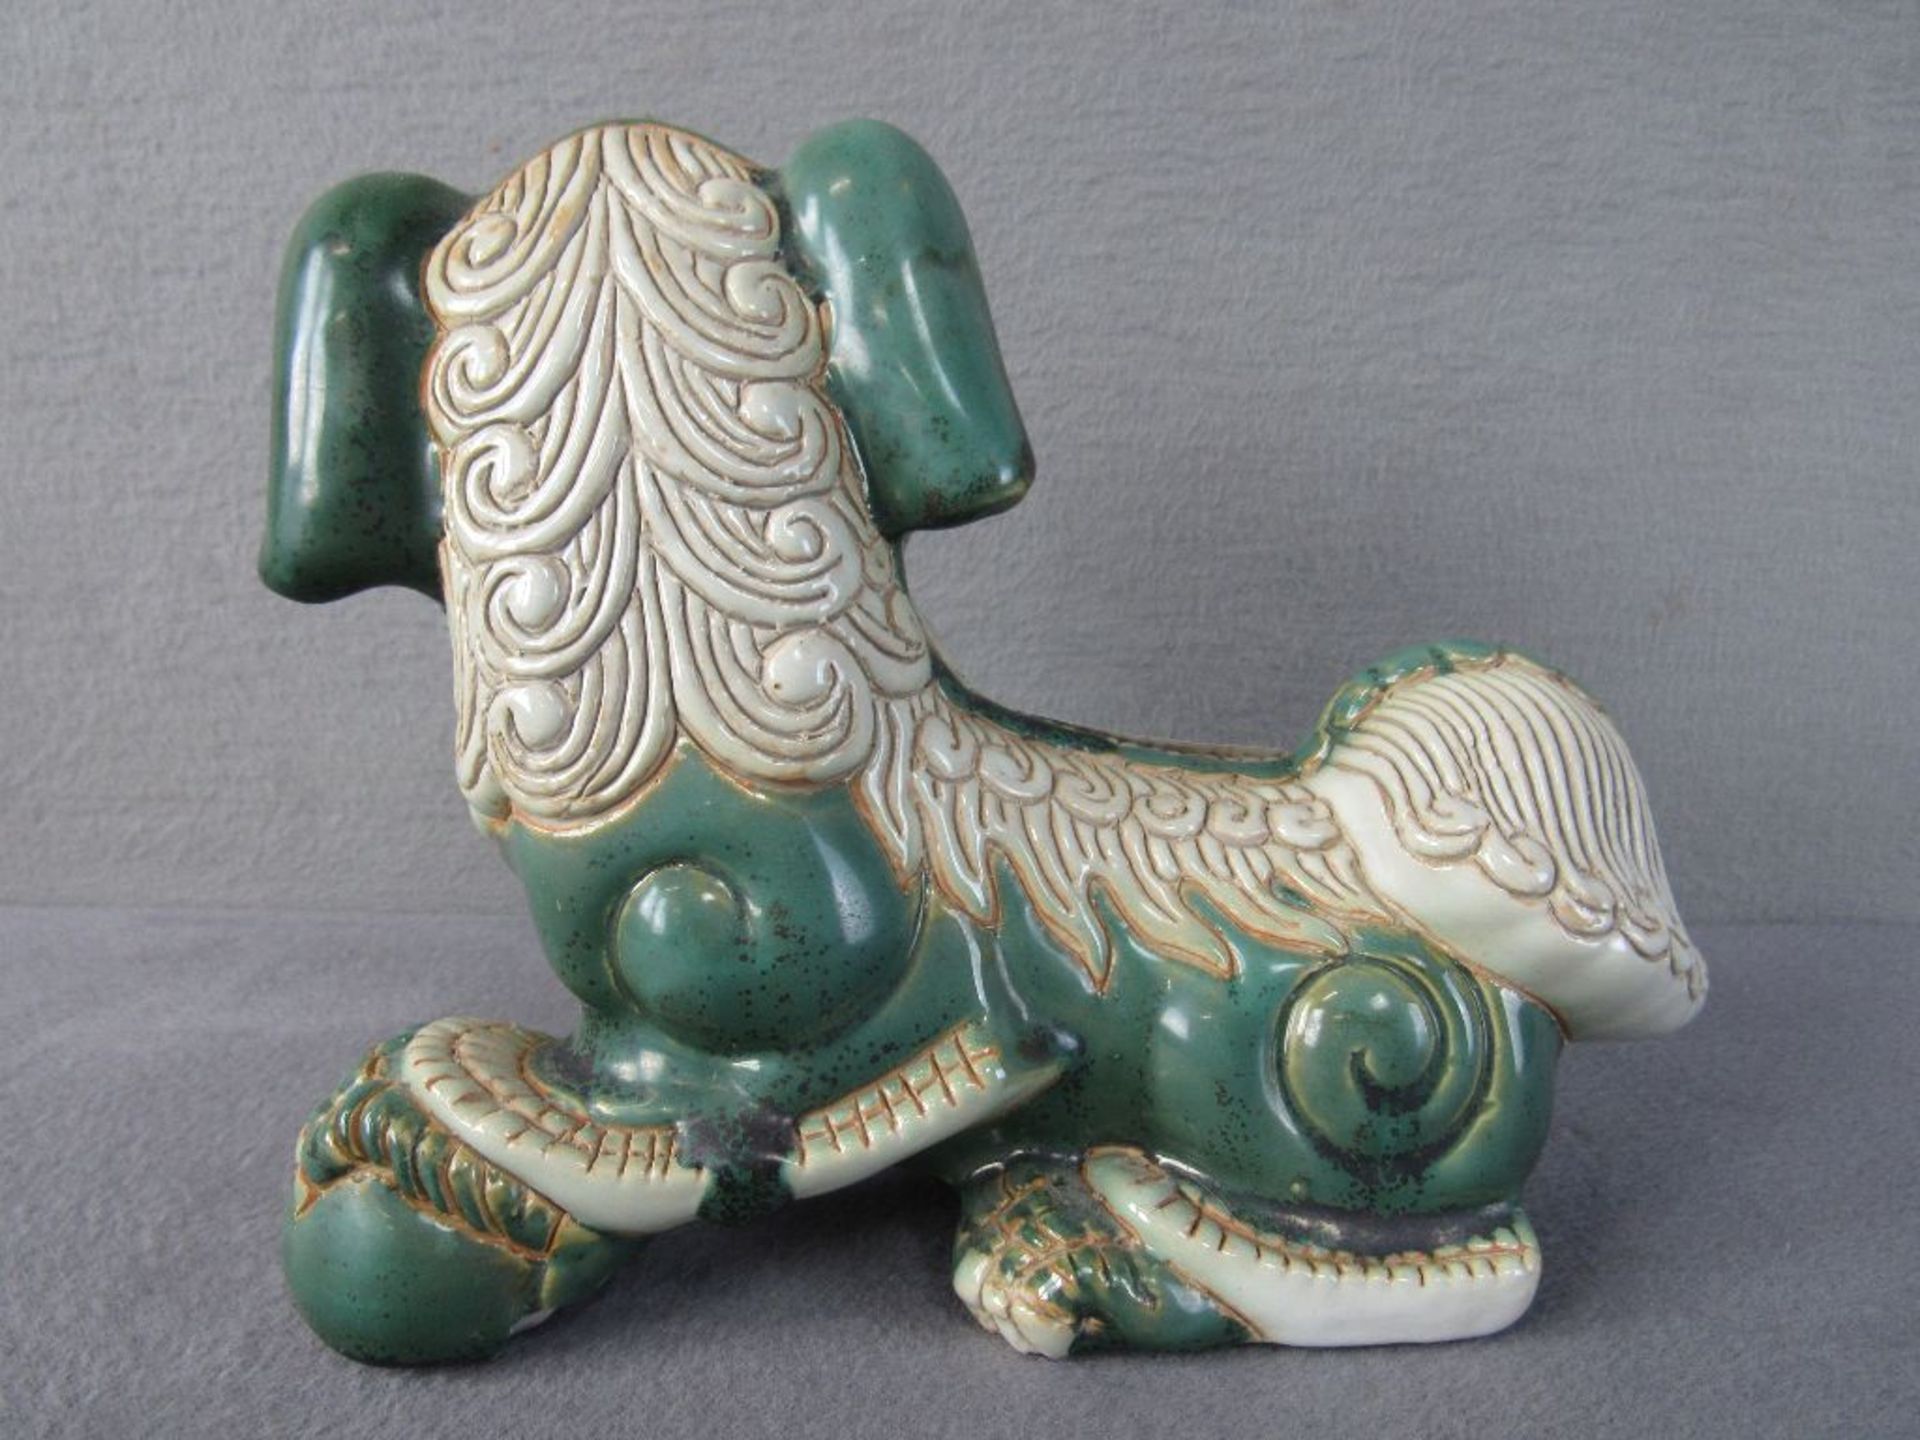 Chinesischer Fu Hund signiert Thary oder ähnlich lasierte Keramik 25cm lang - Bild 4 aus 6